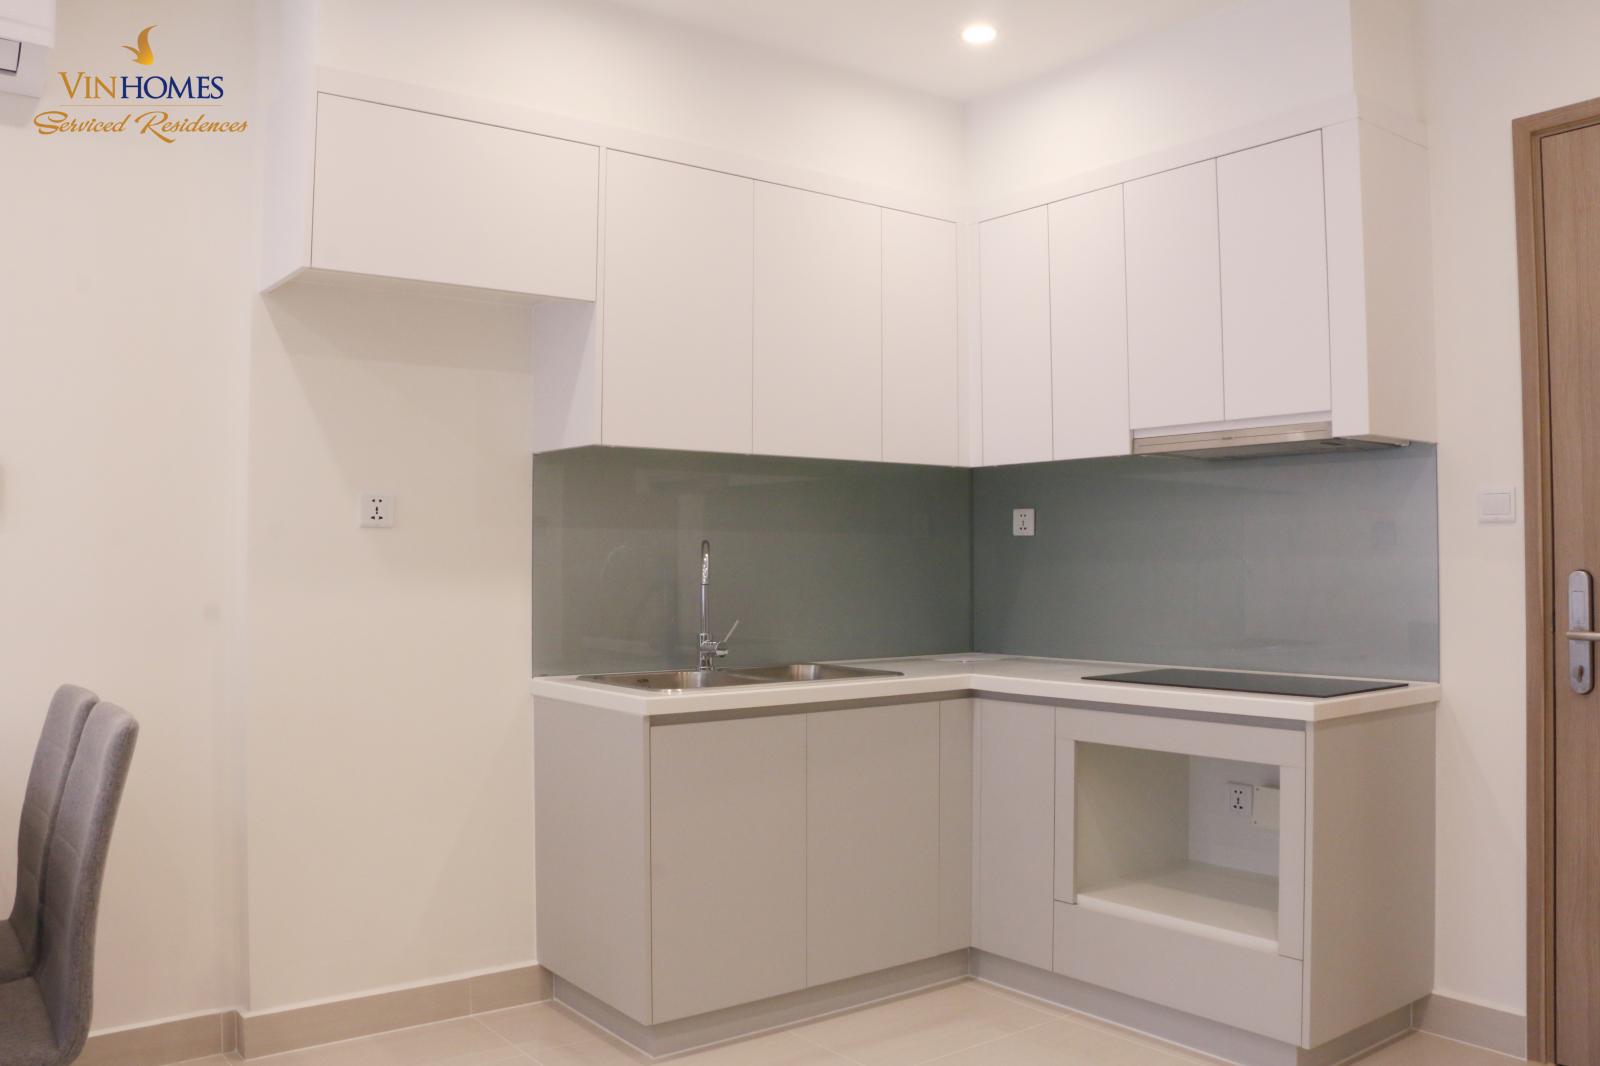 Chỉ còn 1 căn hộ 1PN+1, 43m2 cho thuê giá chỉ 7,2 triệu tại Vinhomes Smart City 11579881